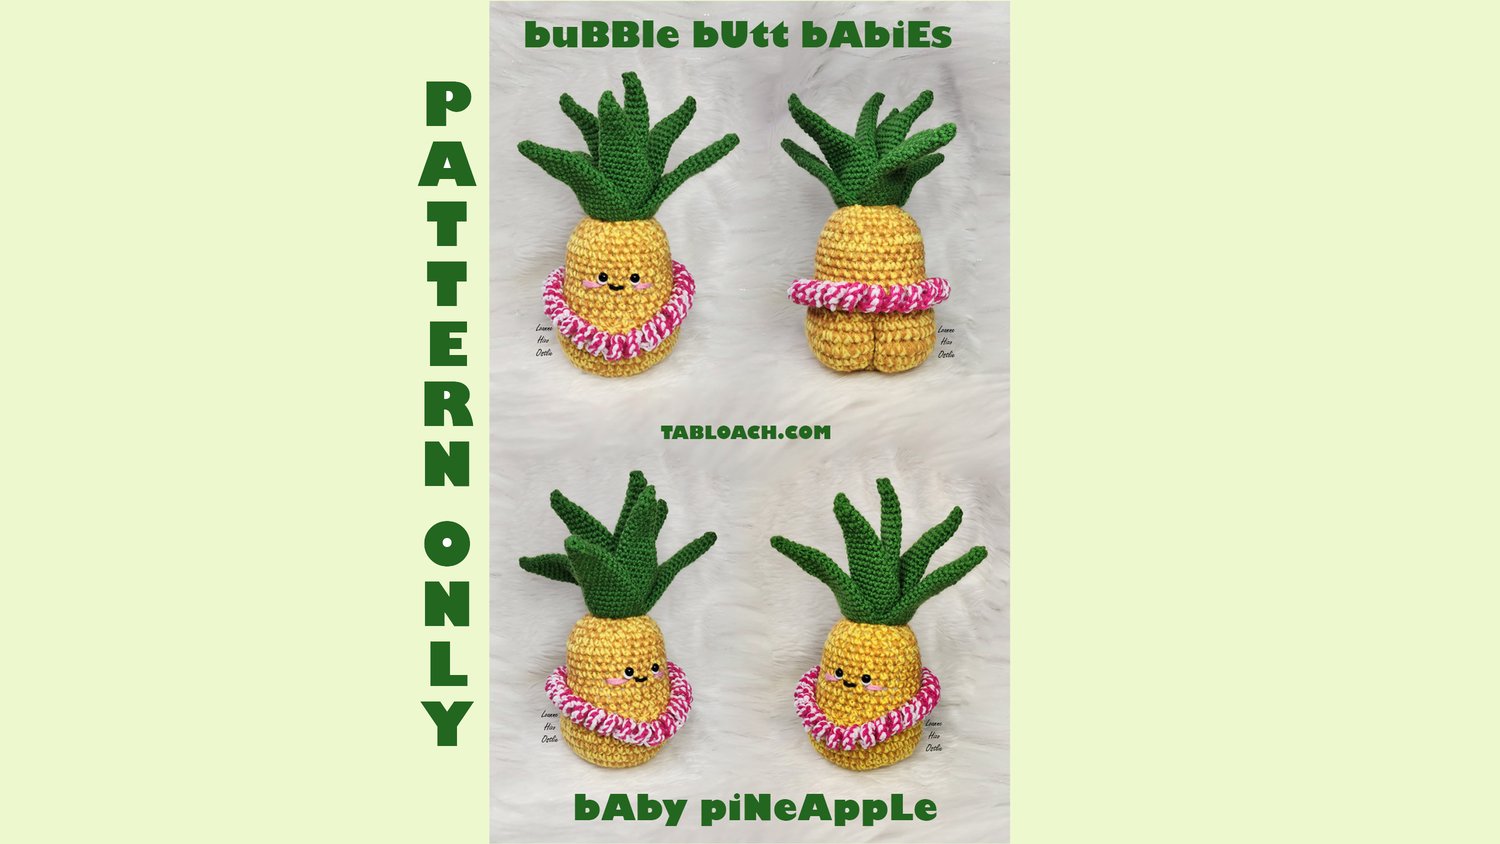 Pineapple: Crochet pattern